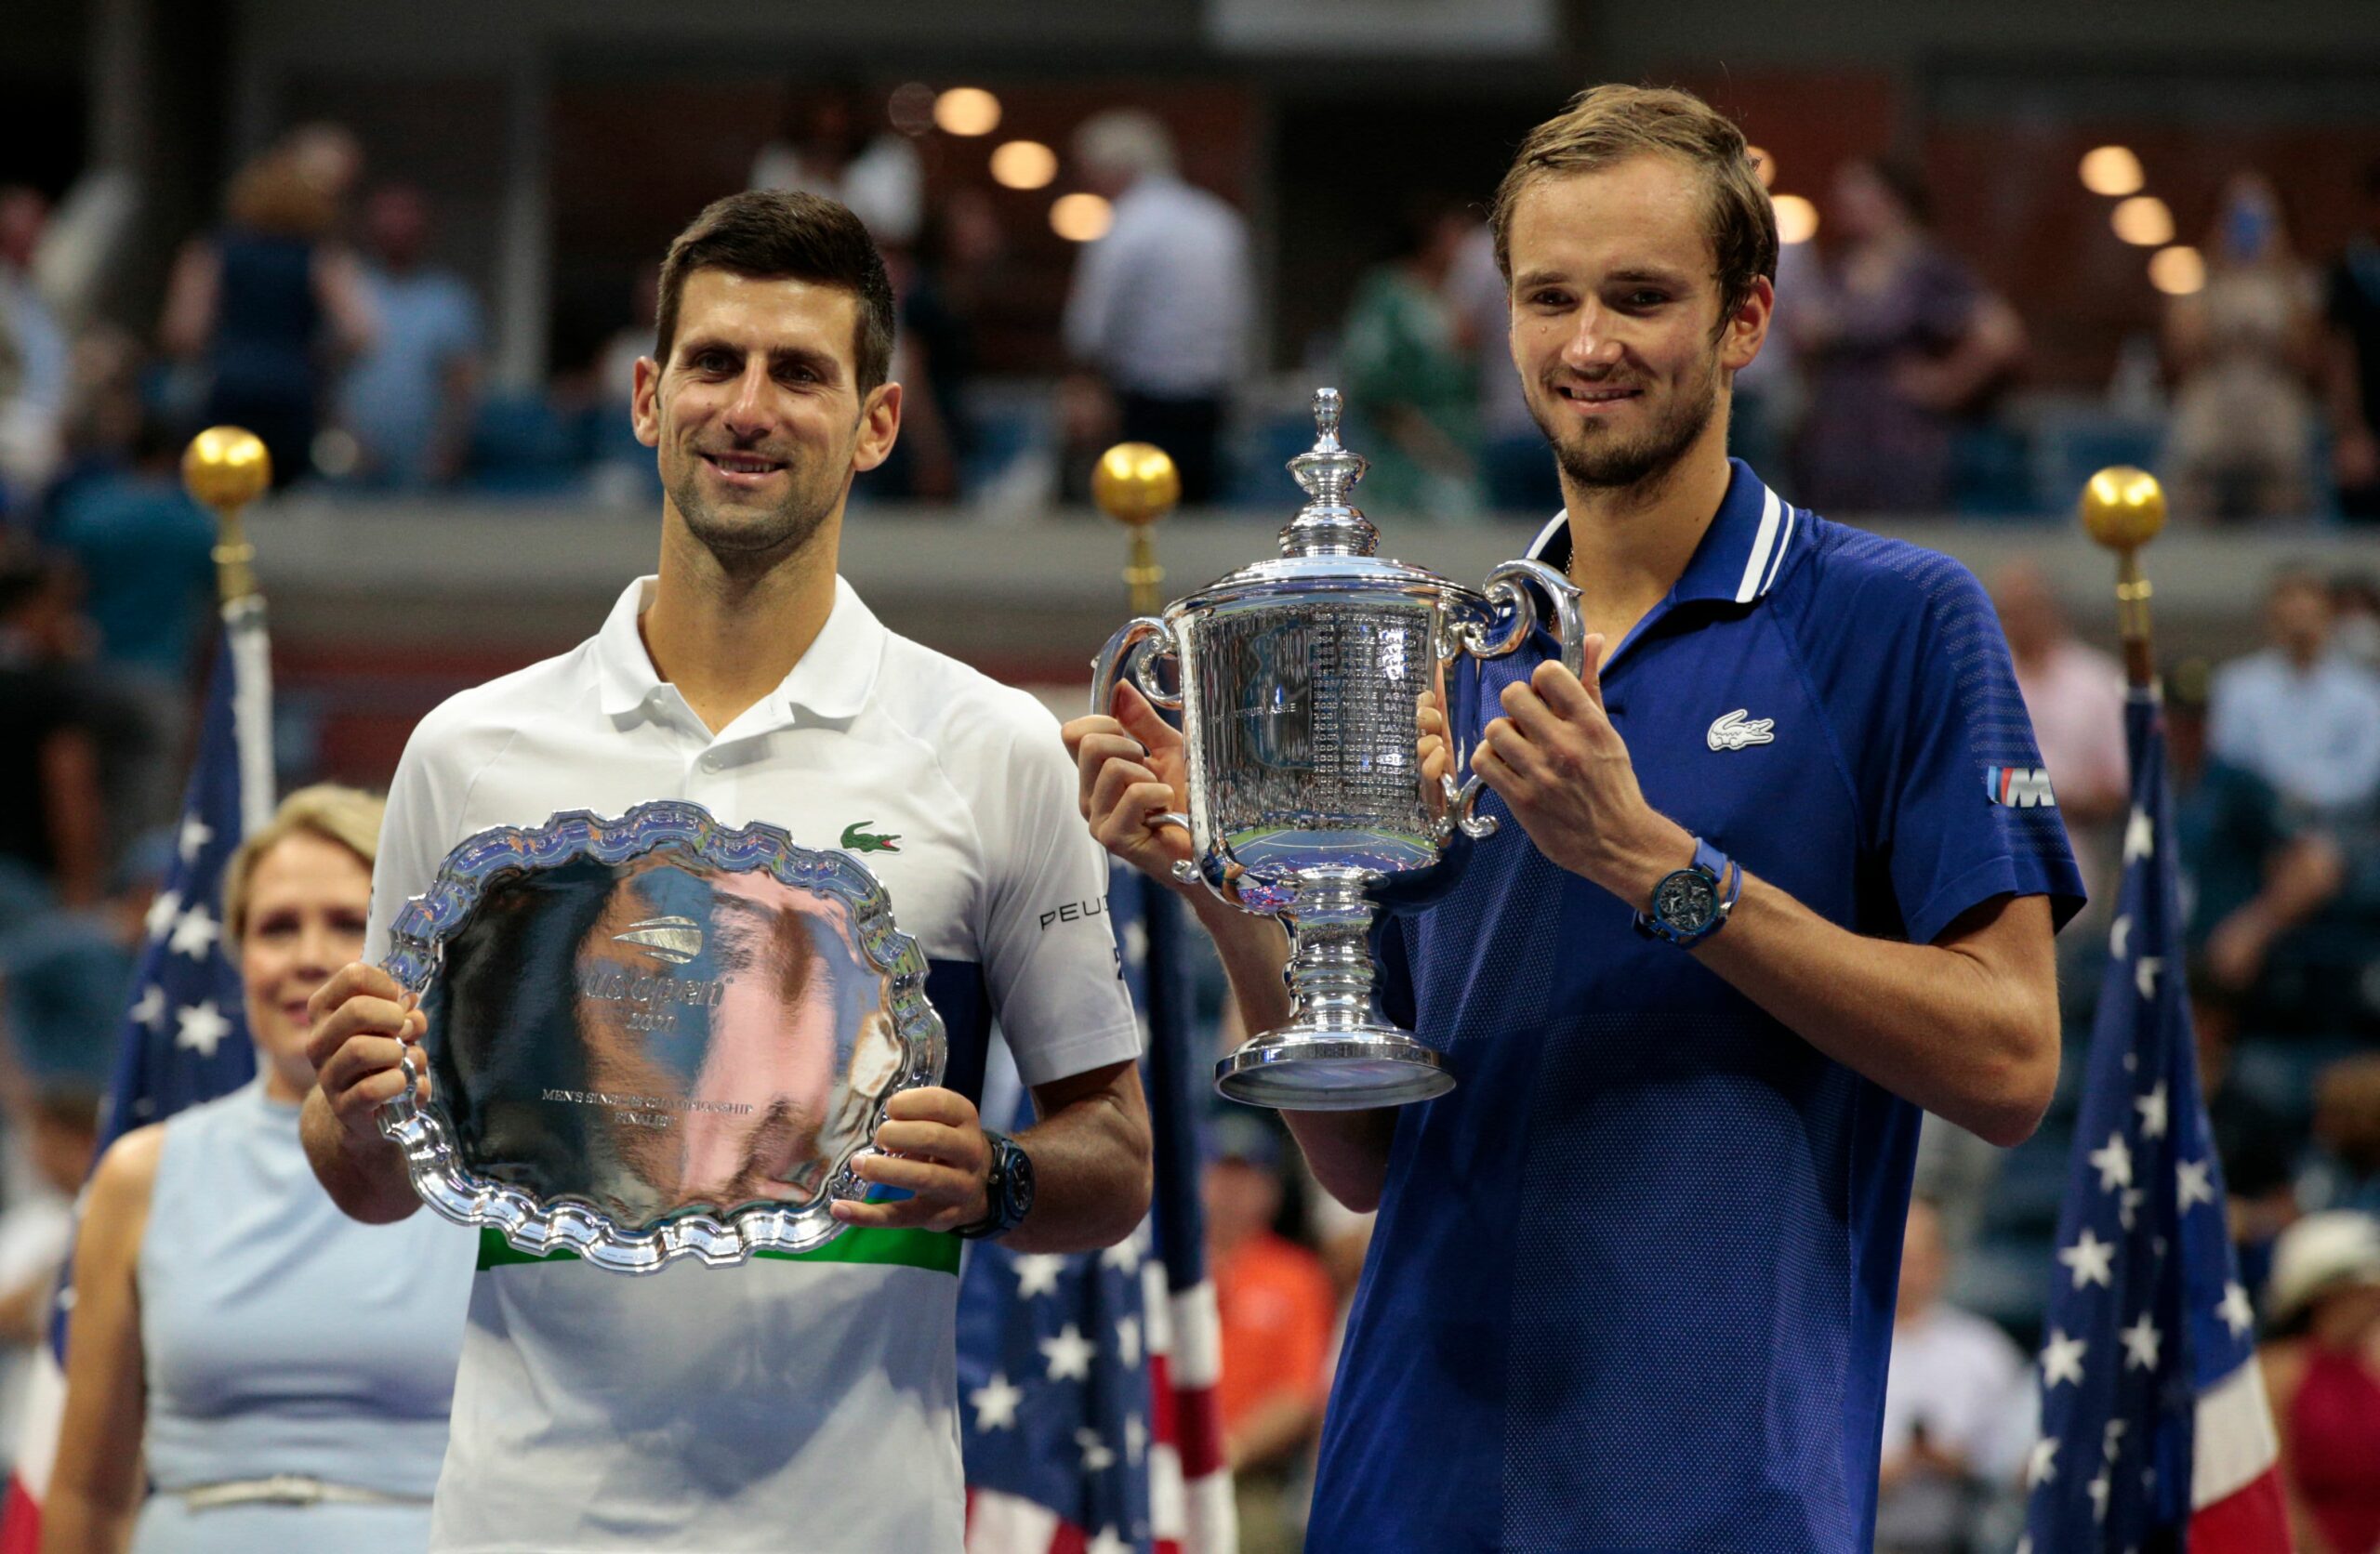 Daniil Medvedev ends Novak Djokovic’s hopes of Grand Slam